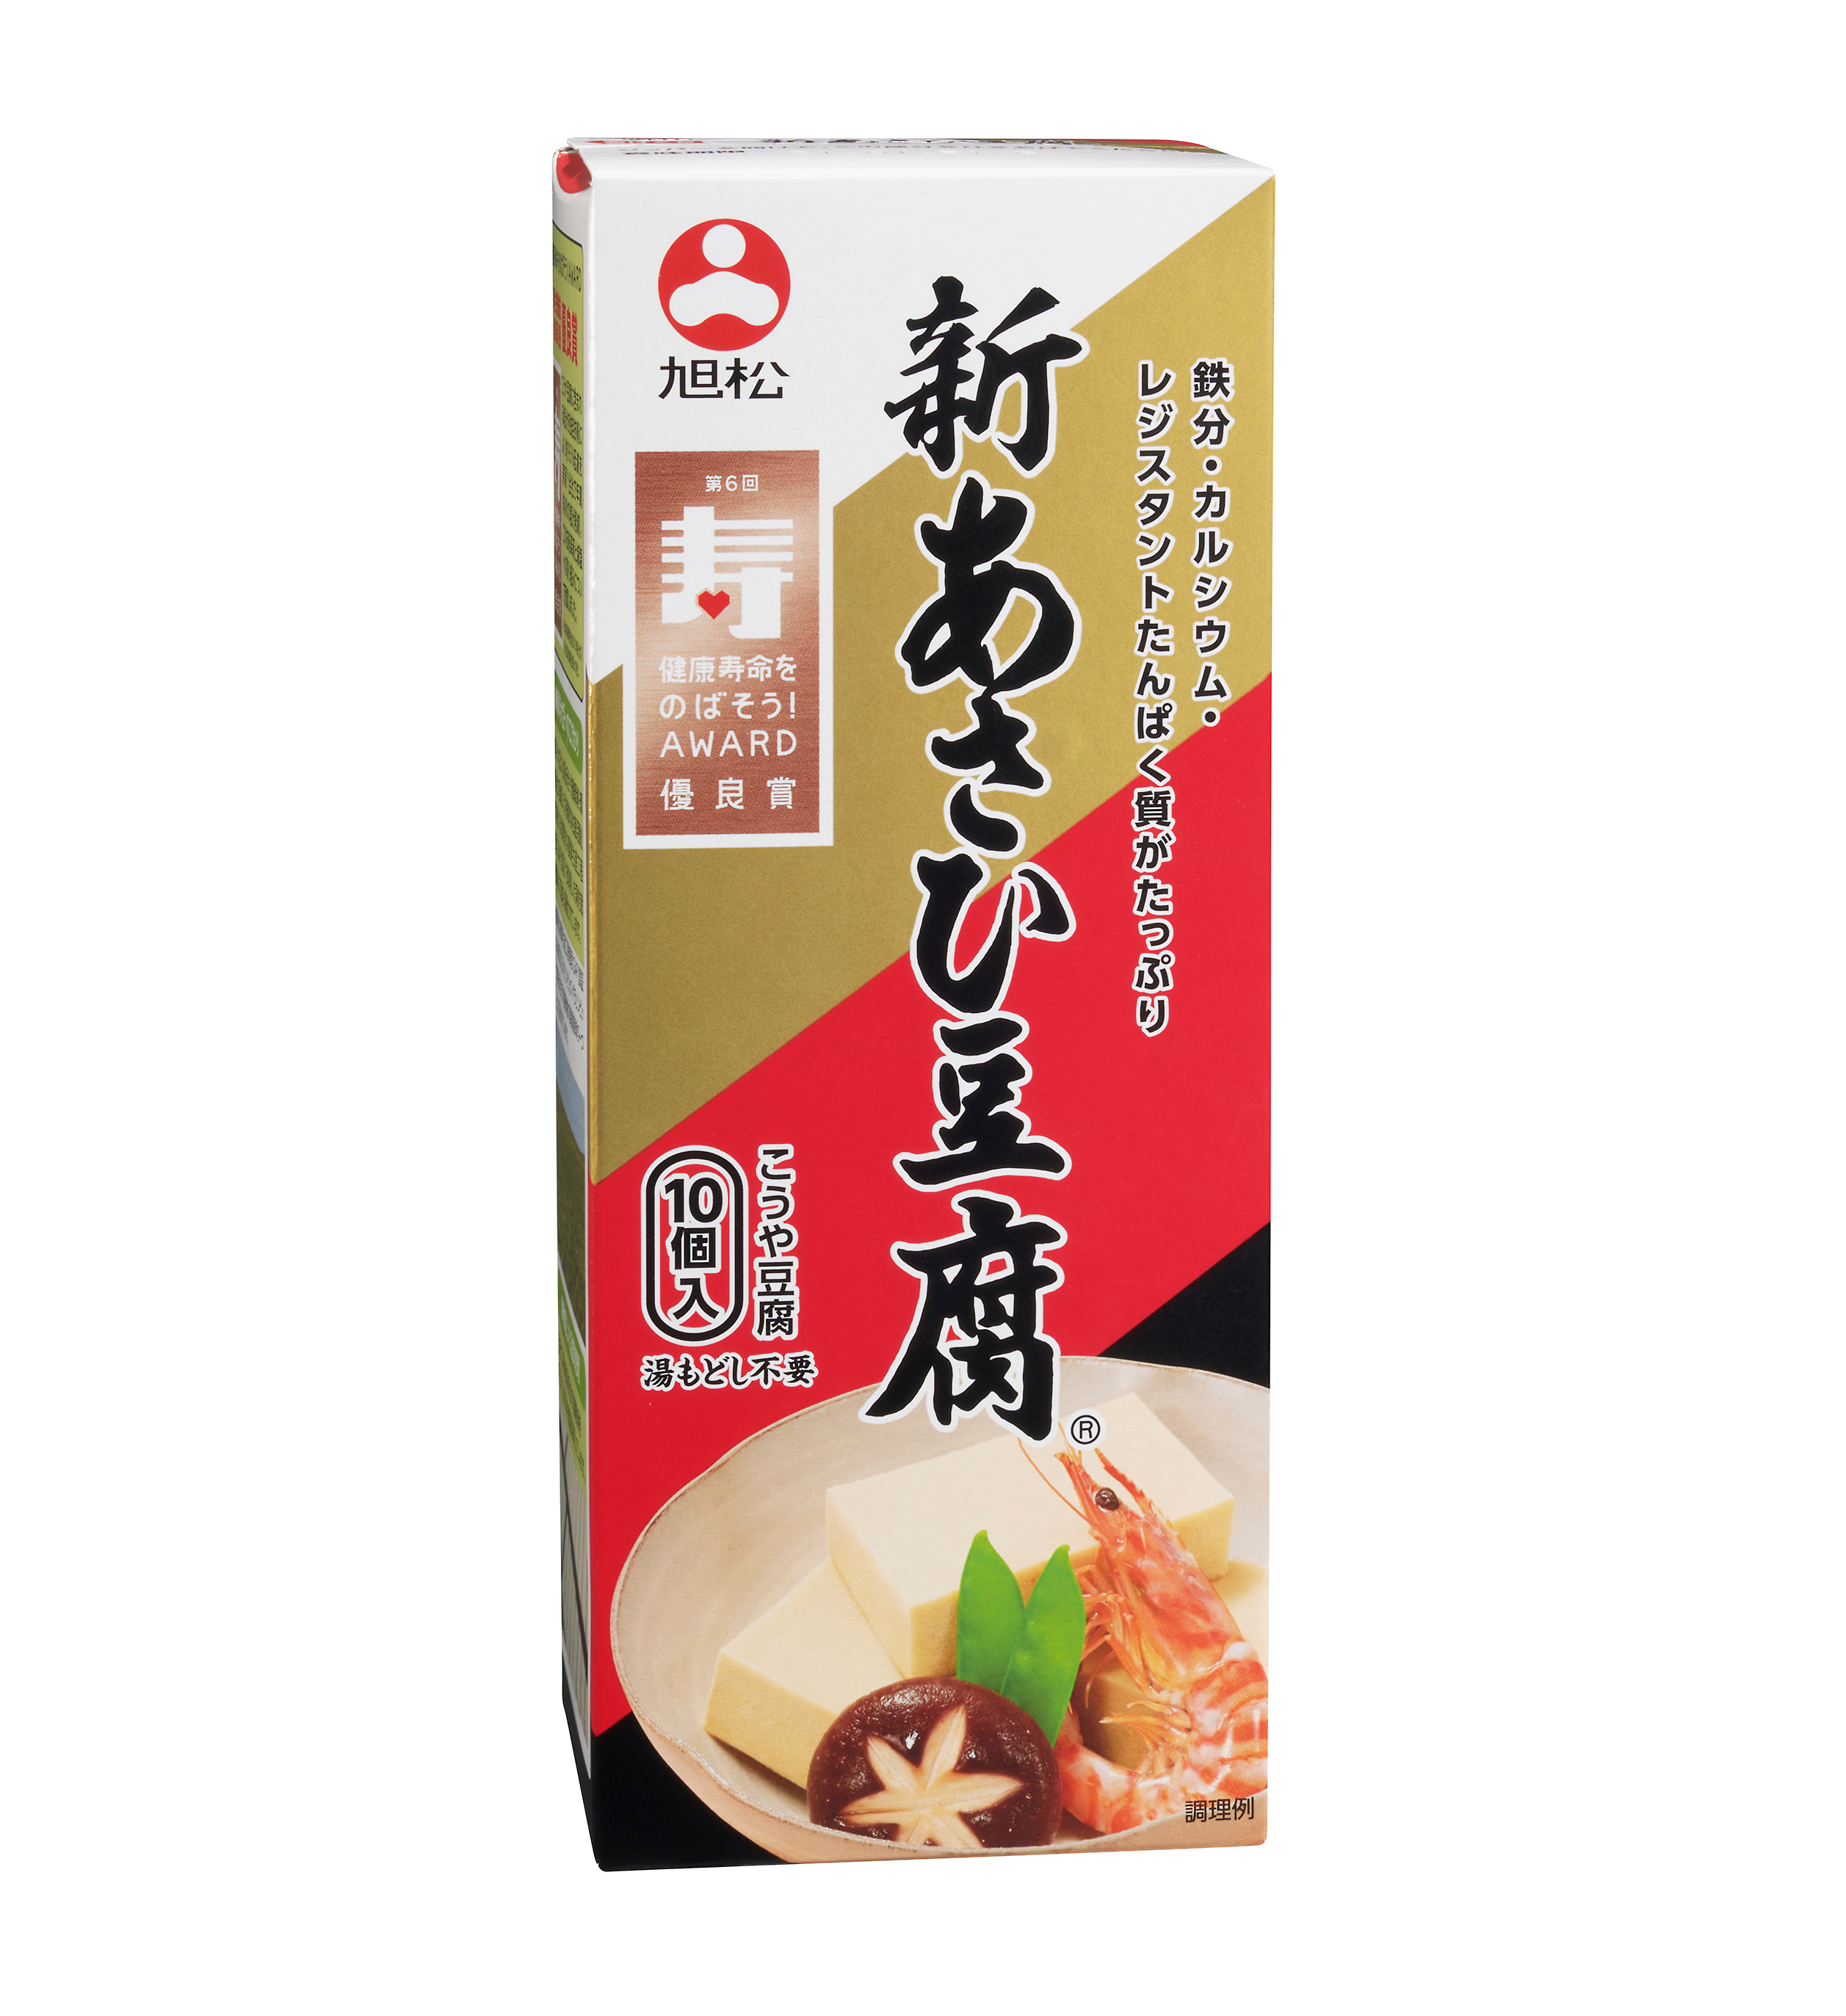 新あさひ豆腐 10個入 旭松食品